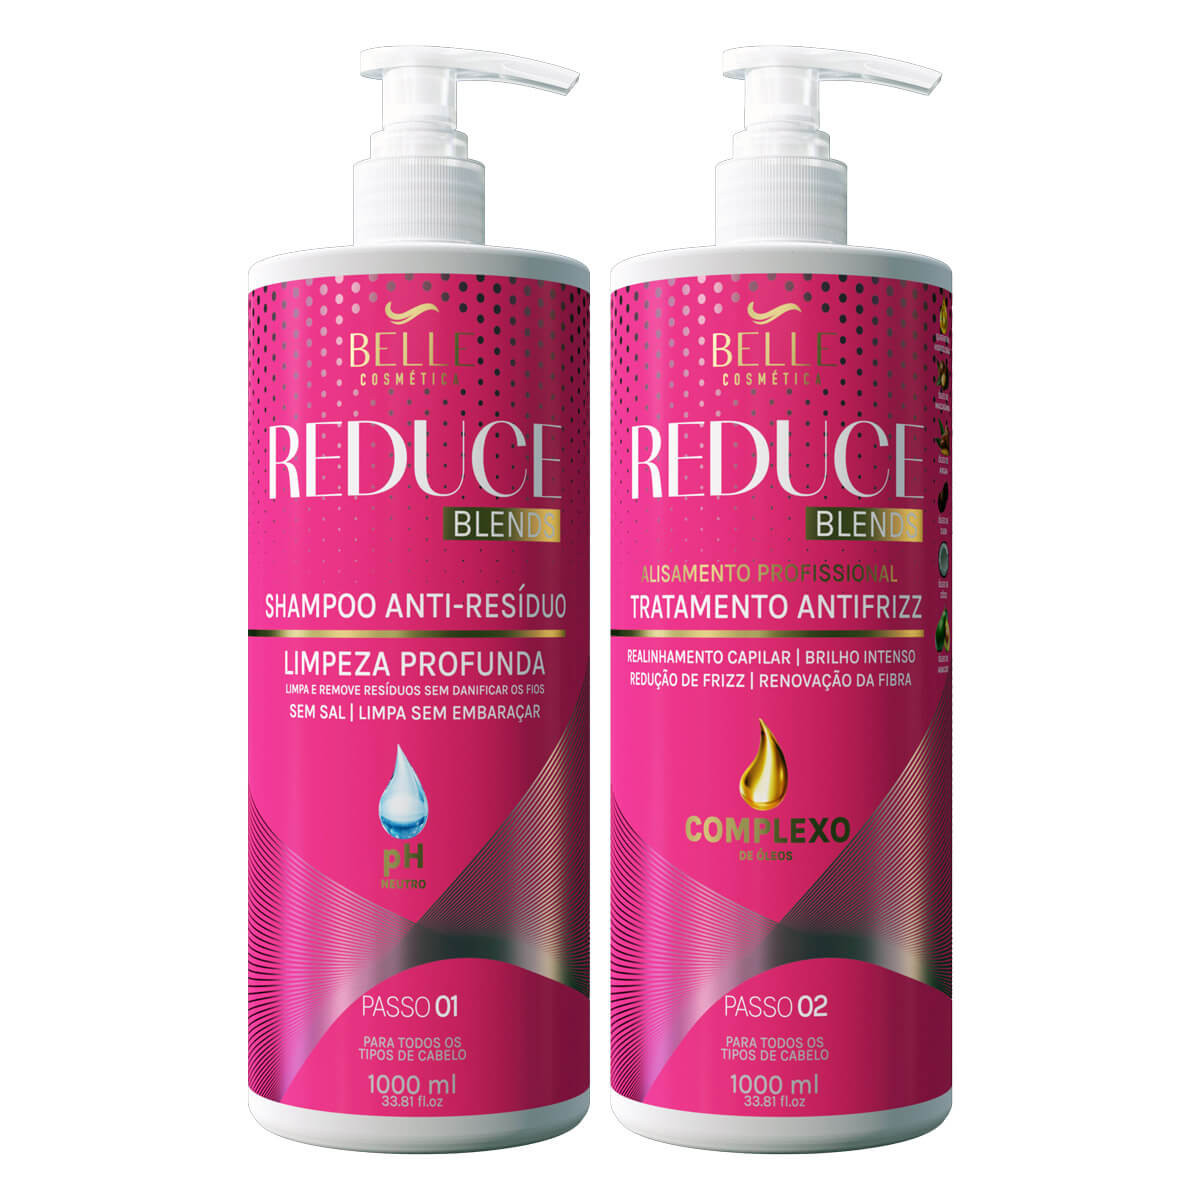 https://cdn.dotcosmeticos.com.br/media/catalog/product/cache/1/image/2200x/040ec09b1e35df139433887a97daa66f/b/e/belle-kit-reduce-shampoo-tratamento-2x1litro-dot.jpg